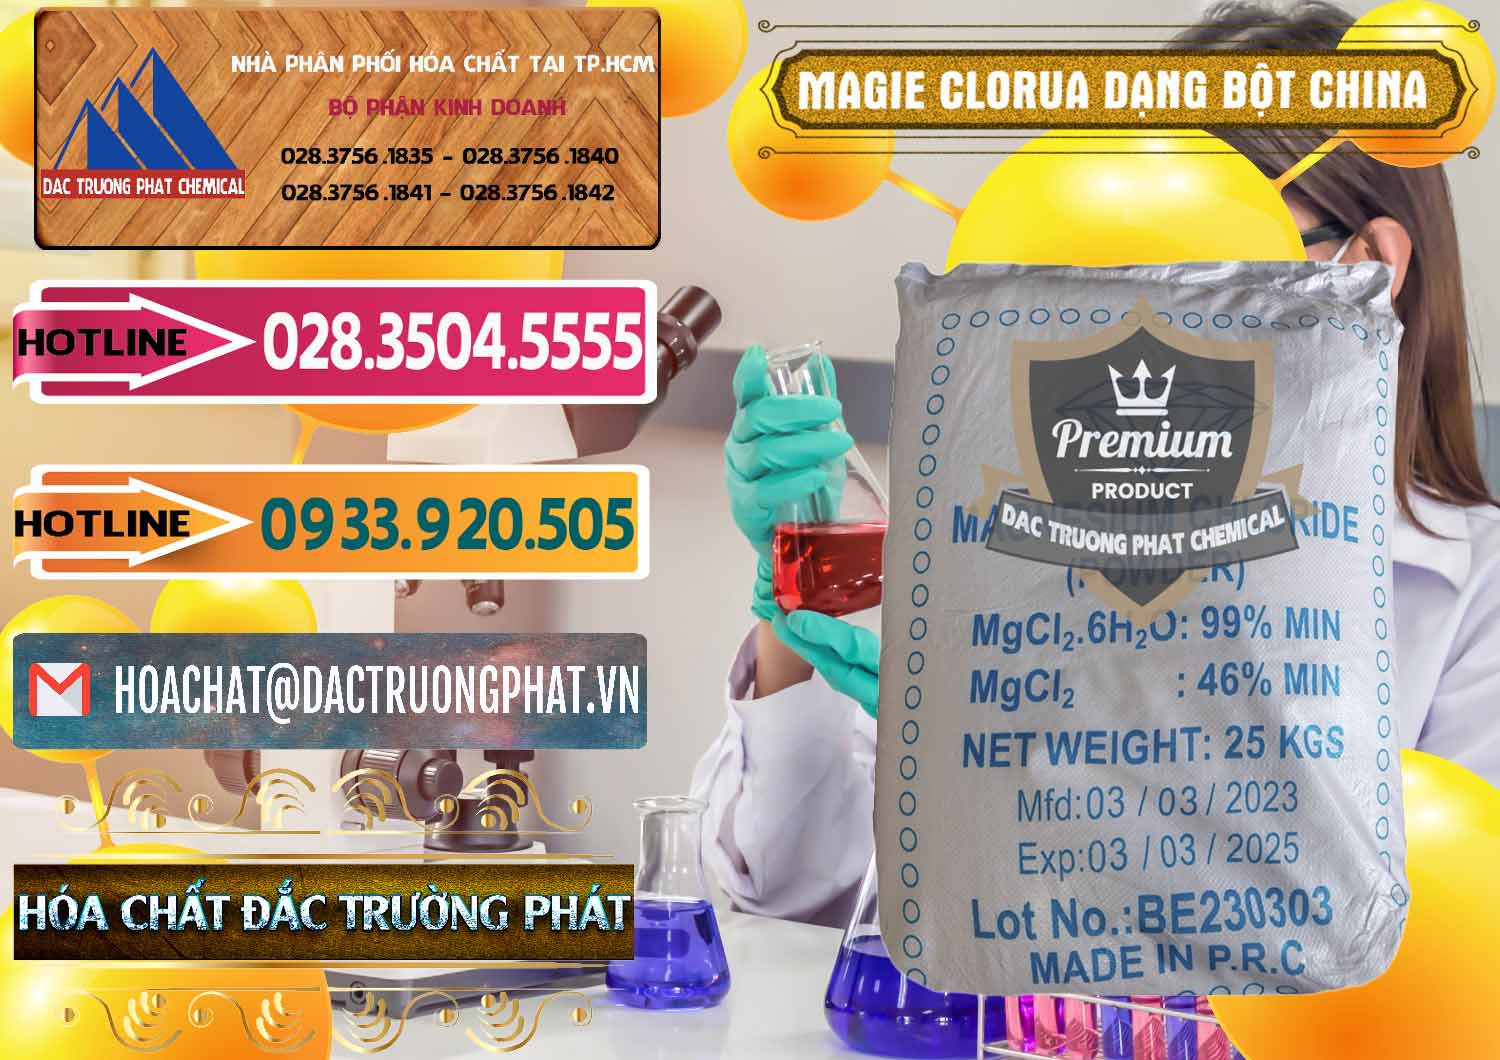 Công ty kinh doanh & bán Magie Clorua – MGCL2 96% Dạng Bột Logo Kim Cương Trung Quốc China - 0387 - Chuyên phân phối & cung cấp hóa chất tại TP.HCM - dactruongphat.vn